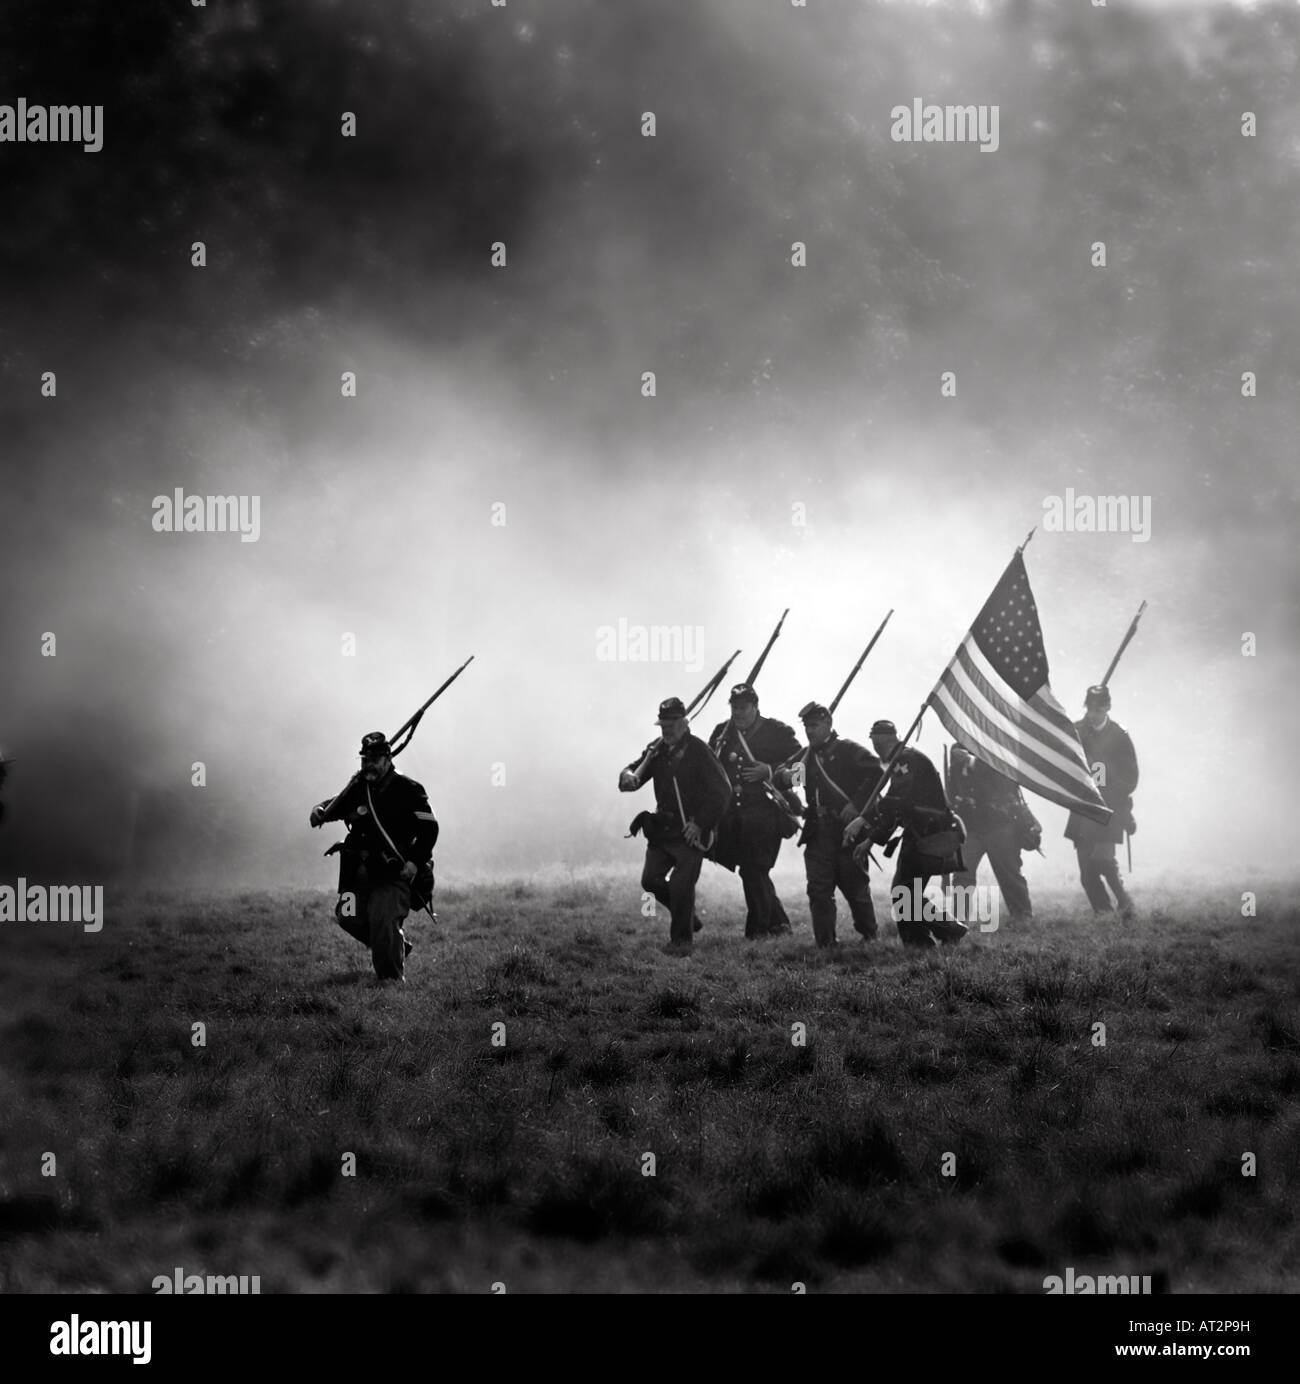 Guerra Civil americana nueva promulgación de los soldados de la Unión circulan al amparo de una batalla de humo. Sólo para uso editorial. Foto de stock